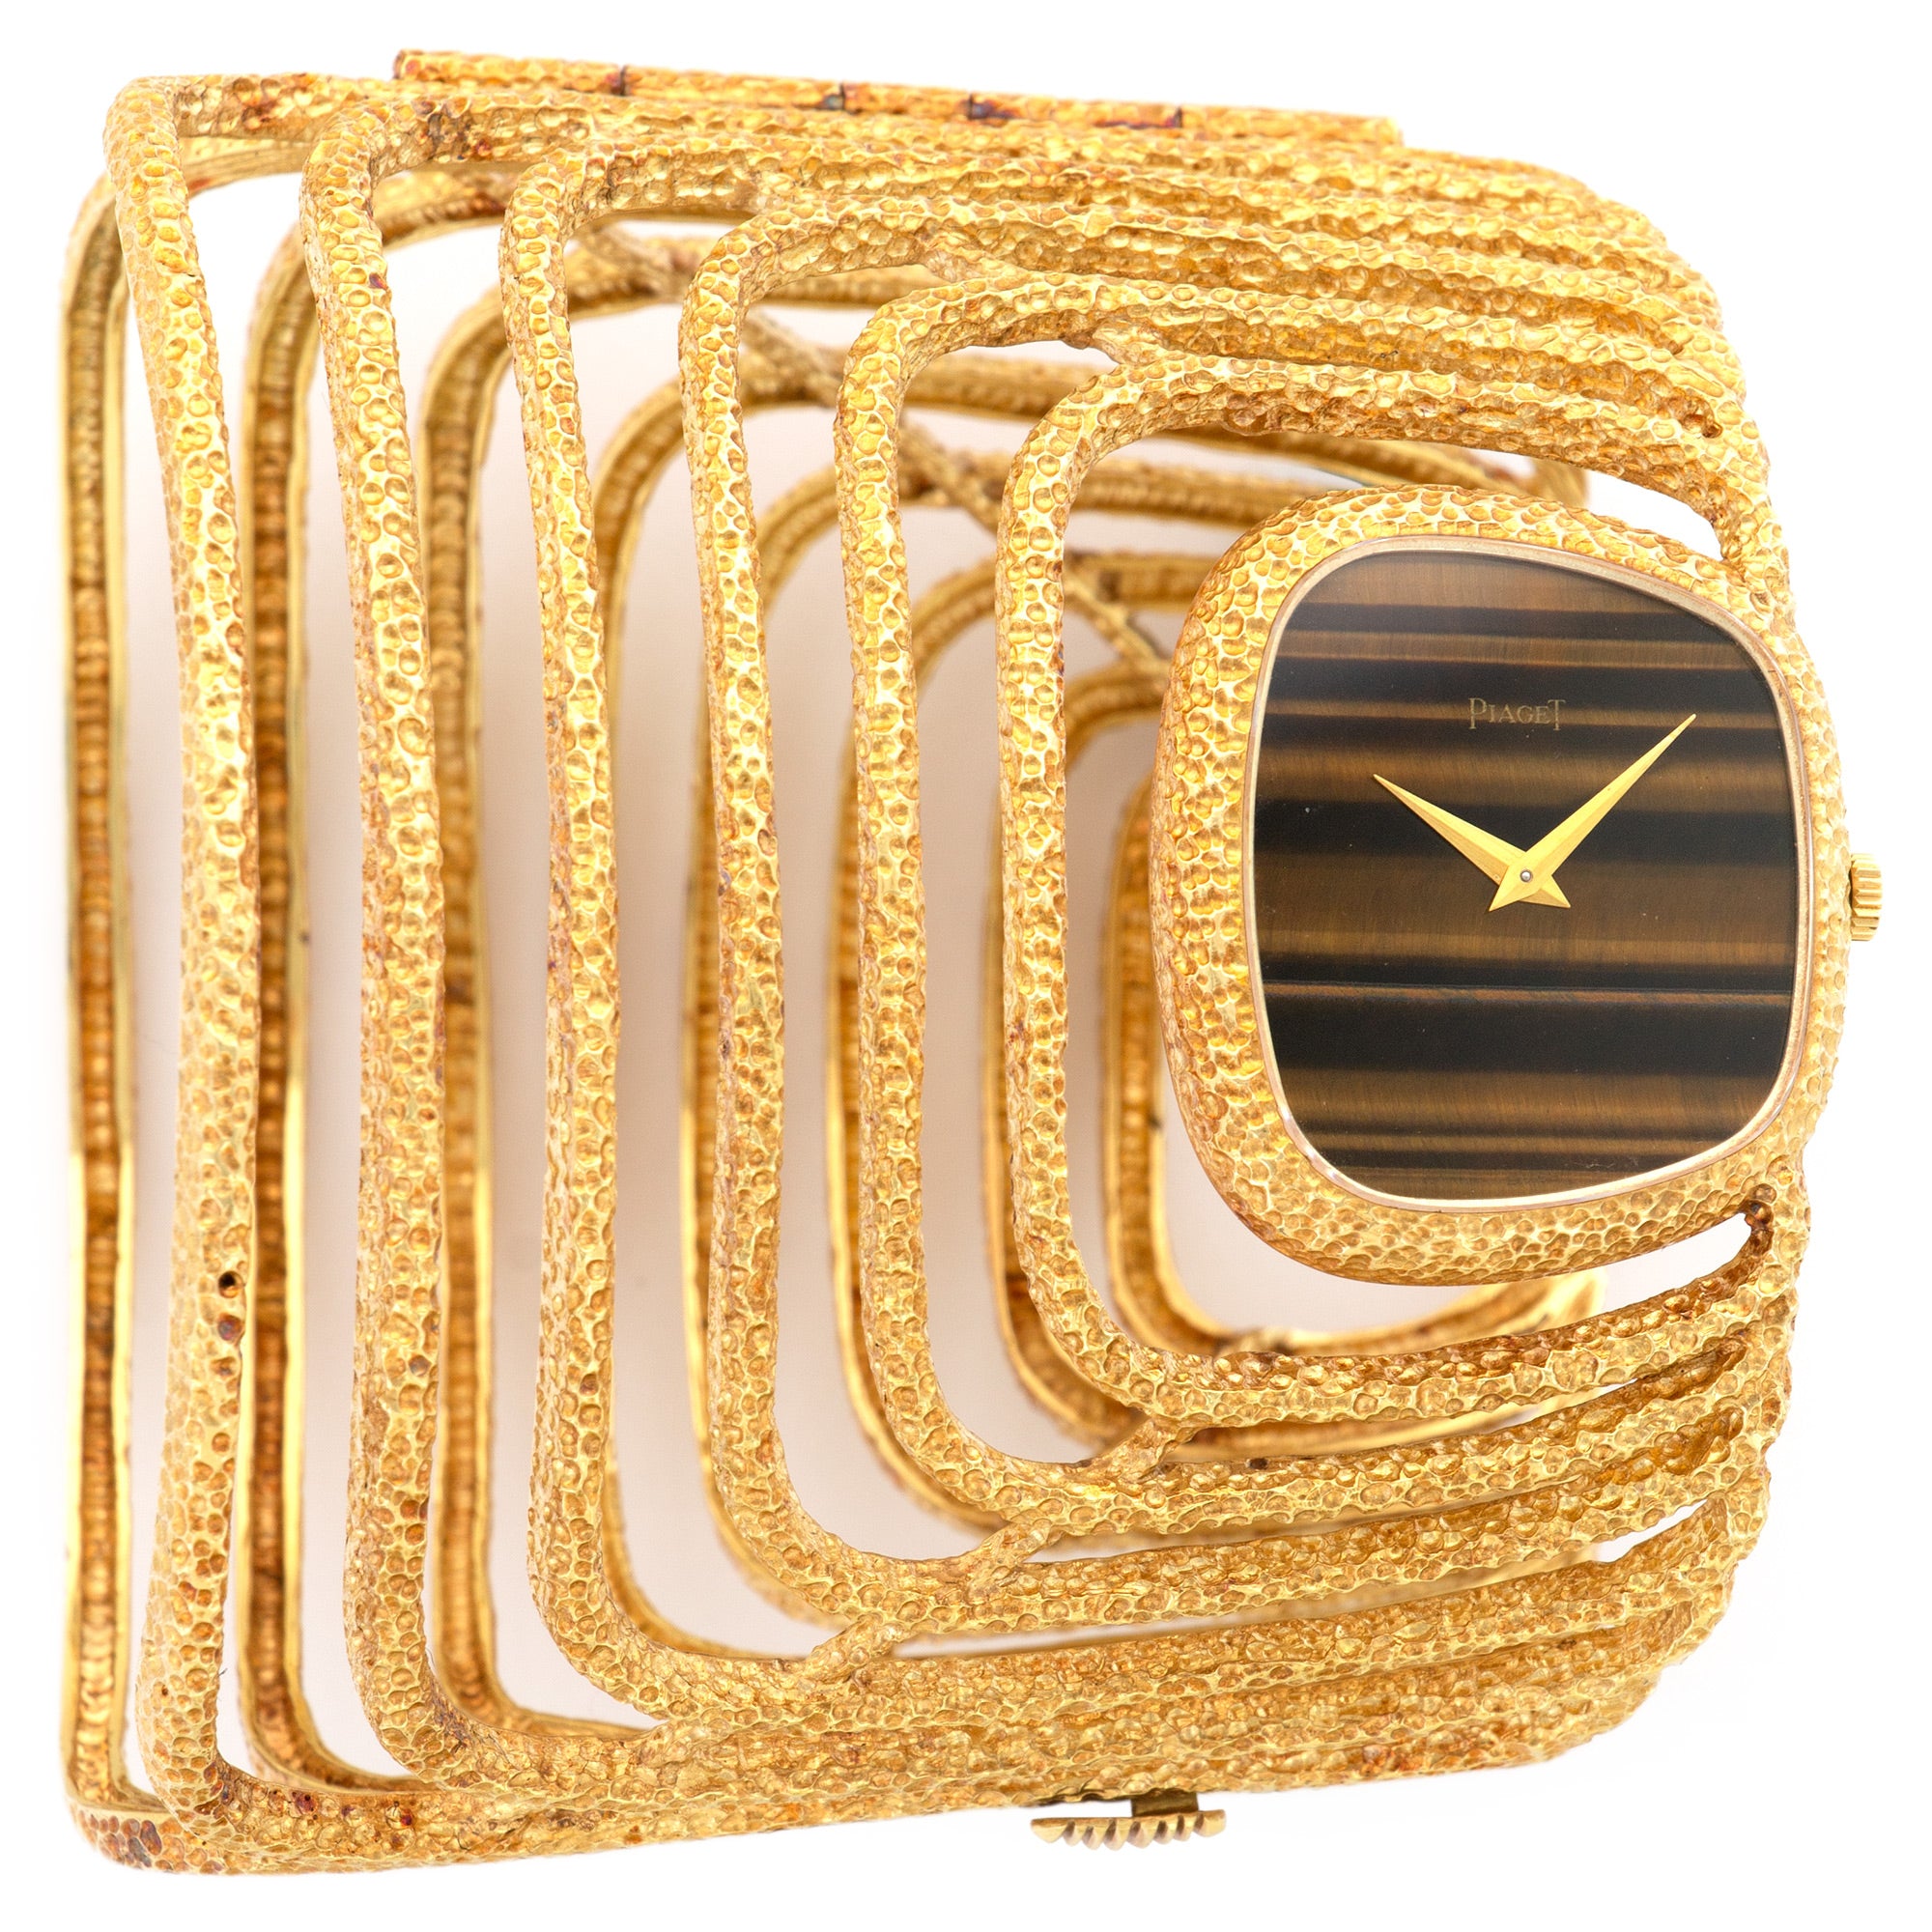 Piaget - Piaget Yellow Gold Manchette Tigerseye Watch - The Keystone Watches